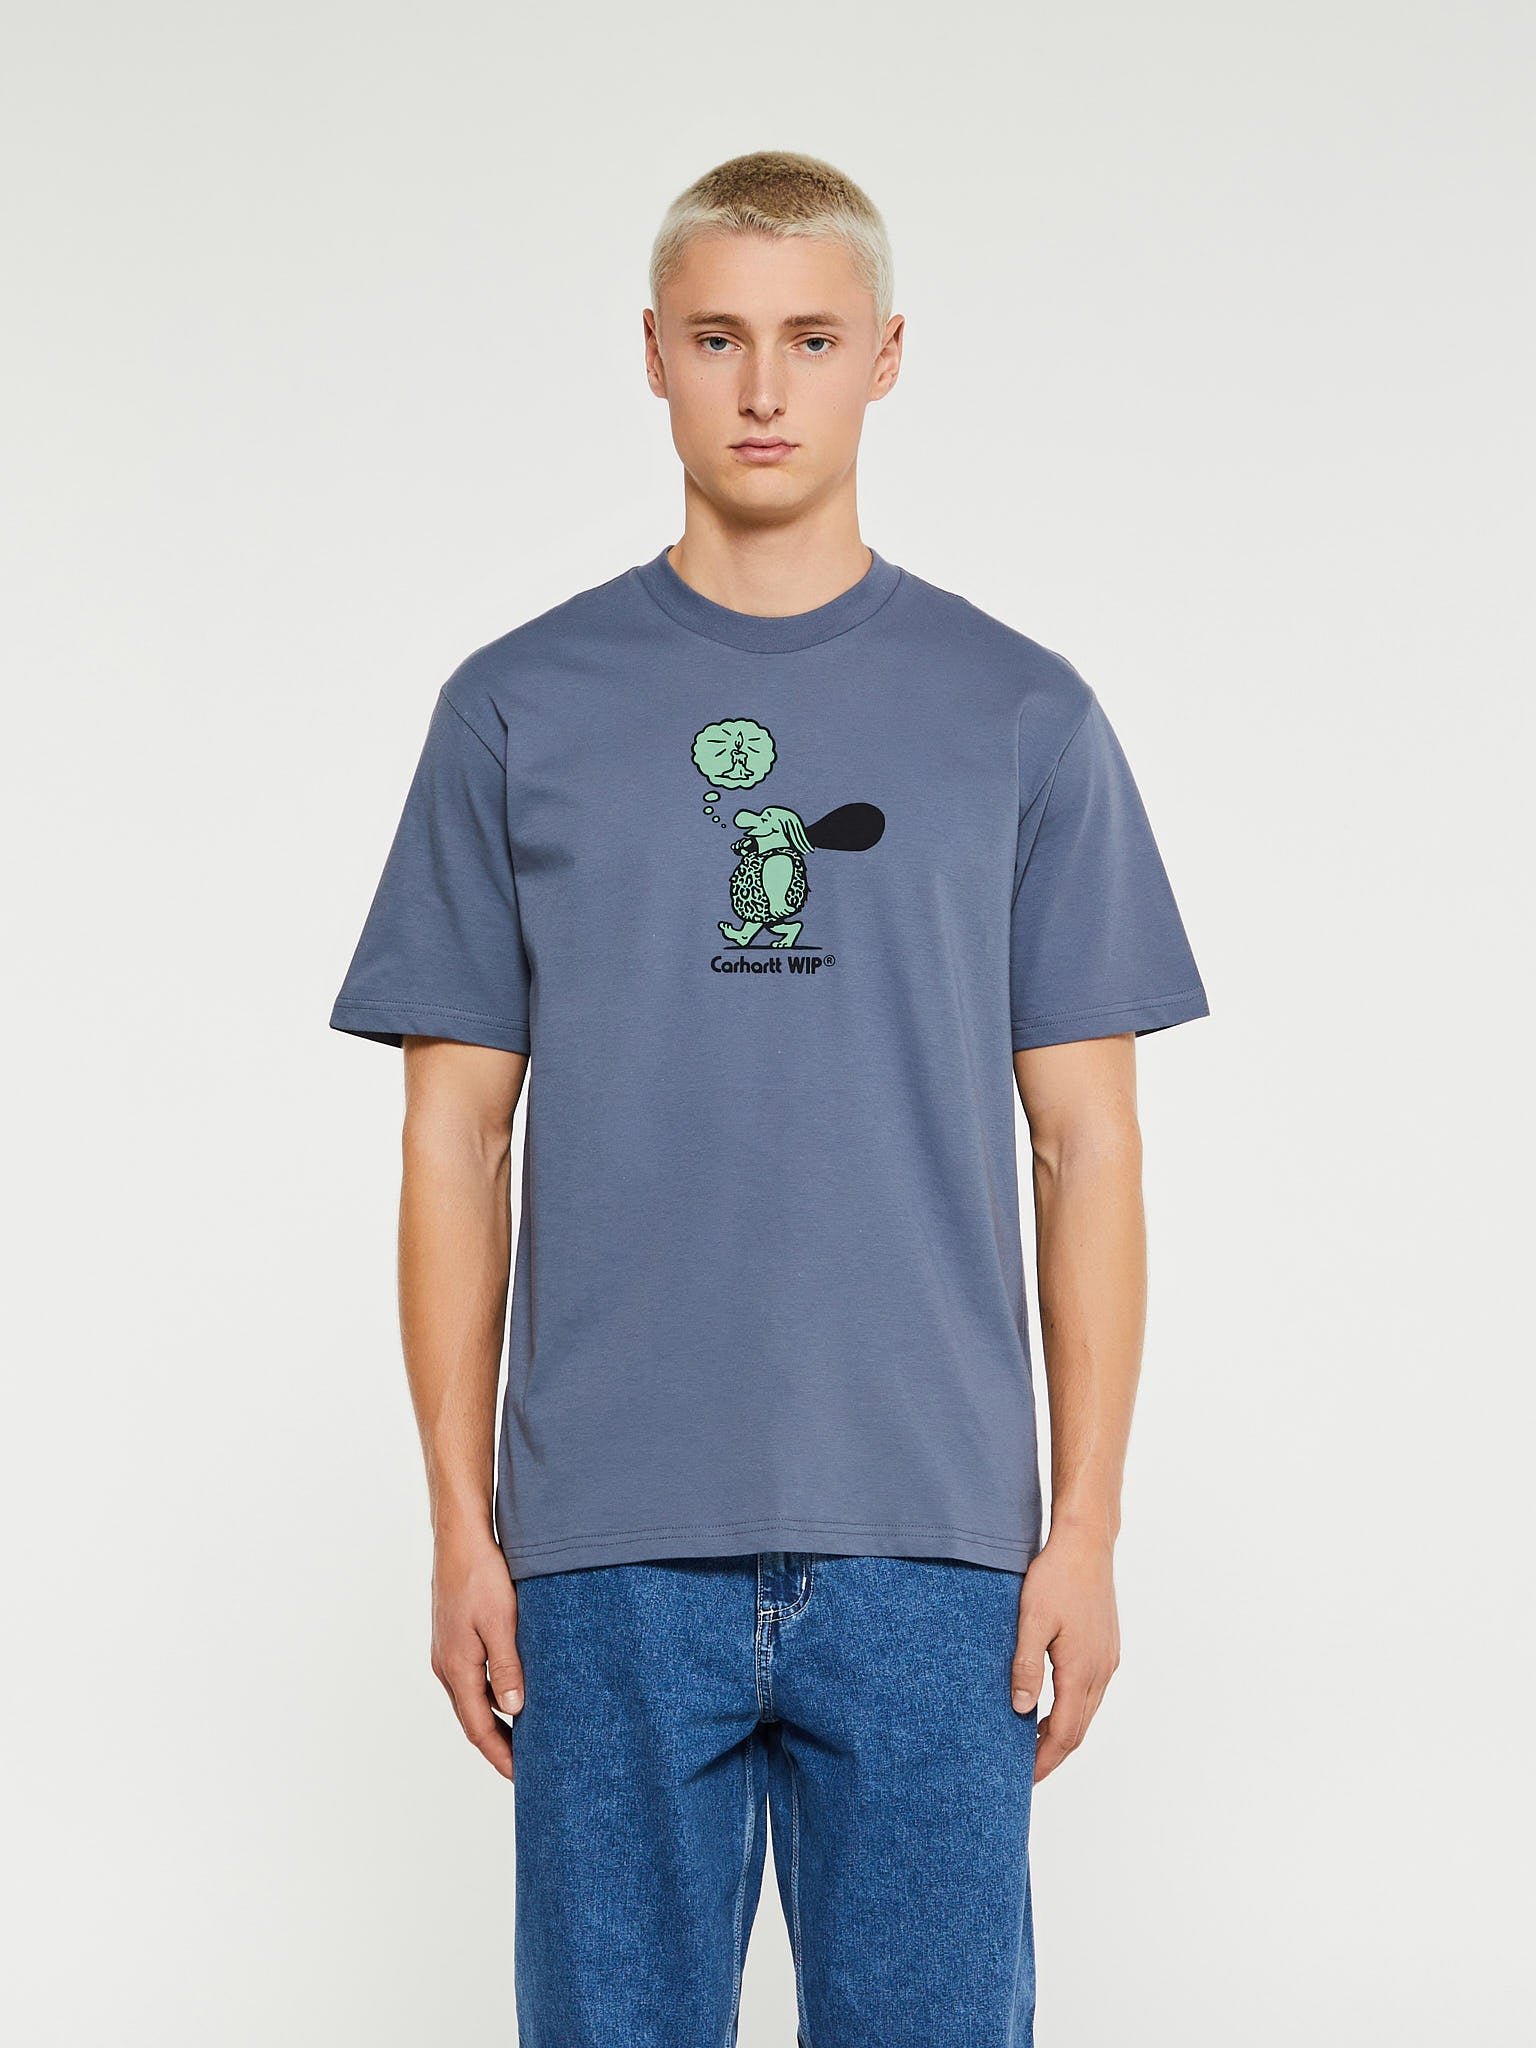 Carhartt - Original Thought T-Shirt in Hudson Blue